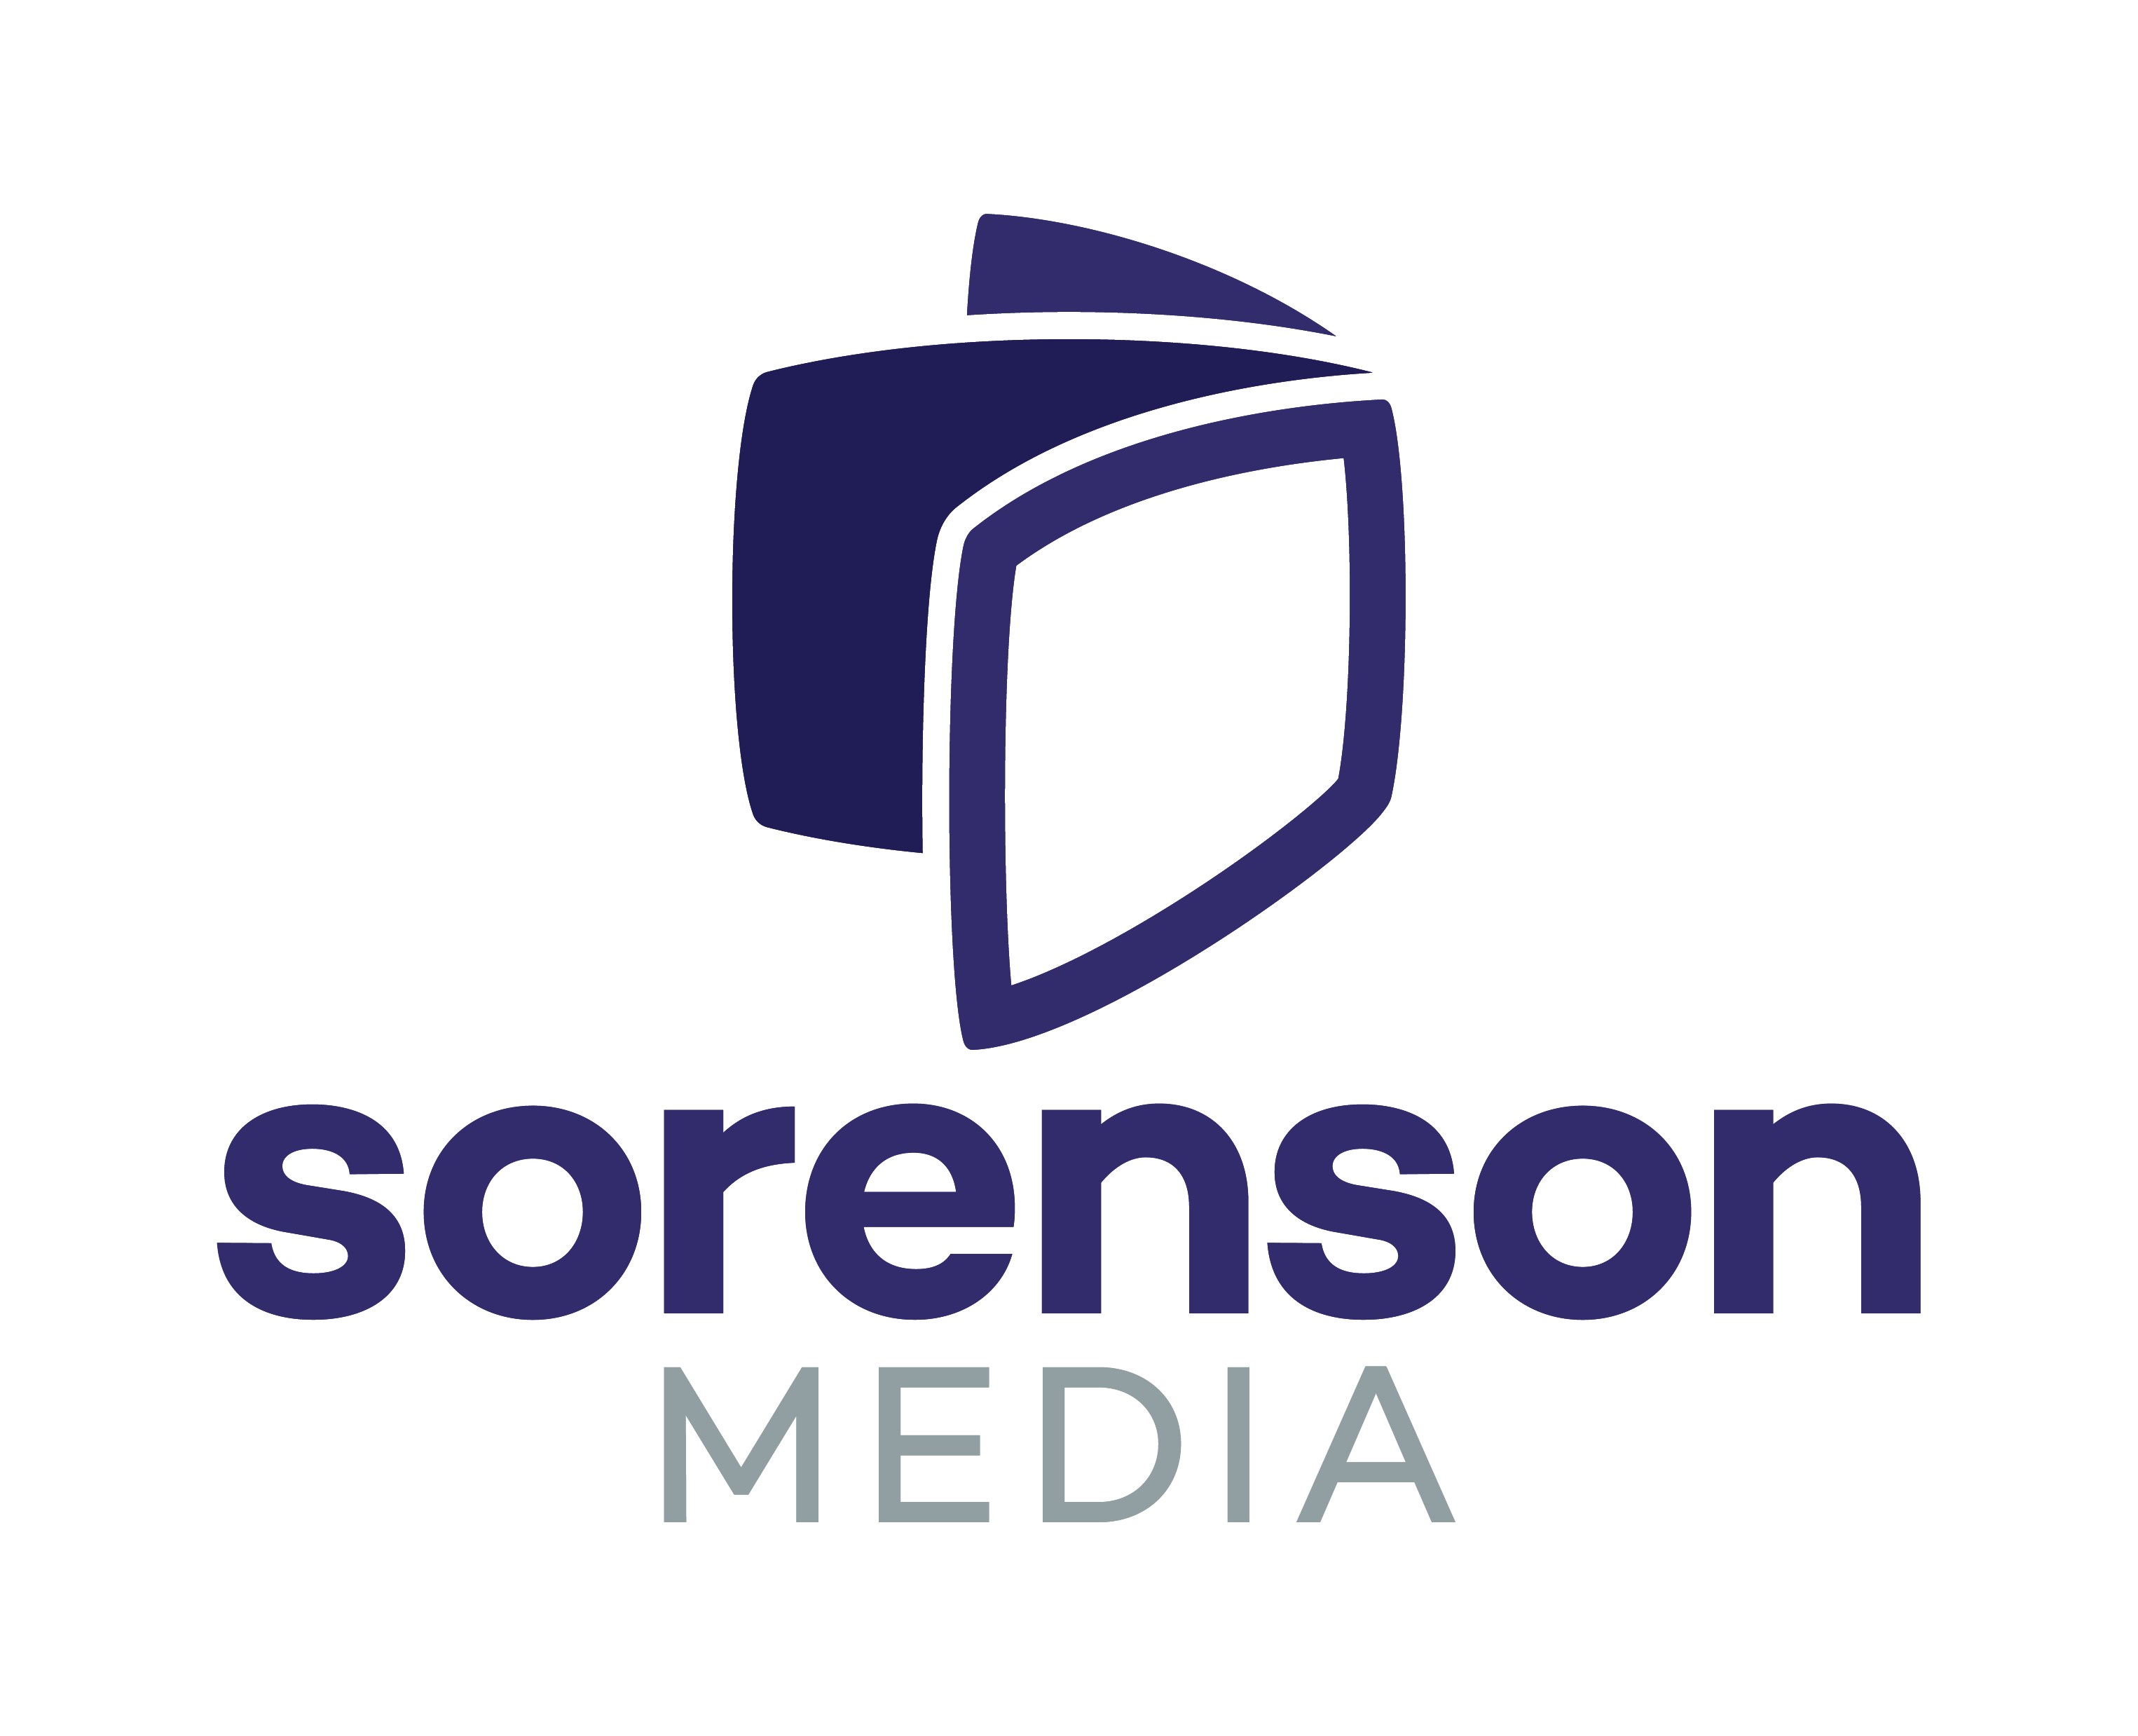 Sorenson-Media-Vert-Primary-FullColor